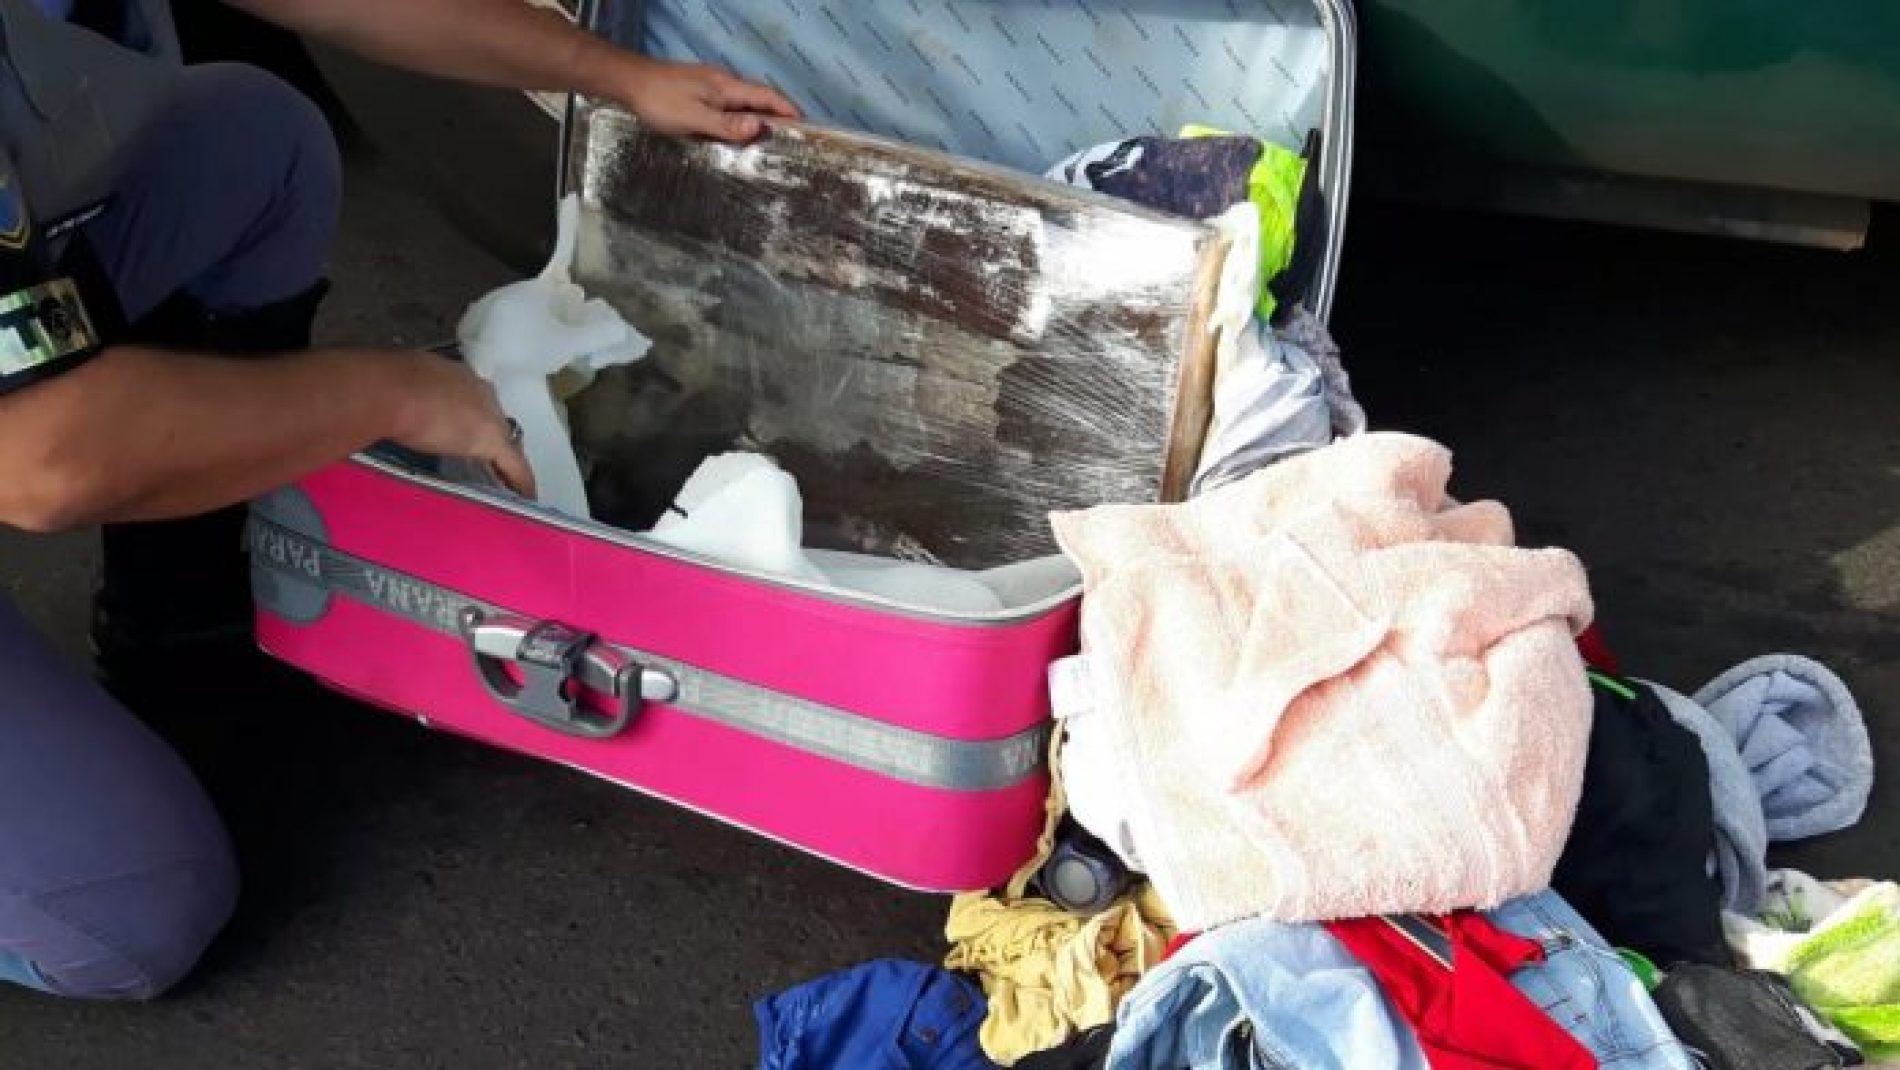 REGIÃO: Mulher é presa com 22 tabletes de maconha escondidos em mala